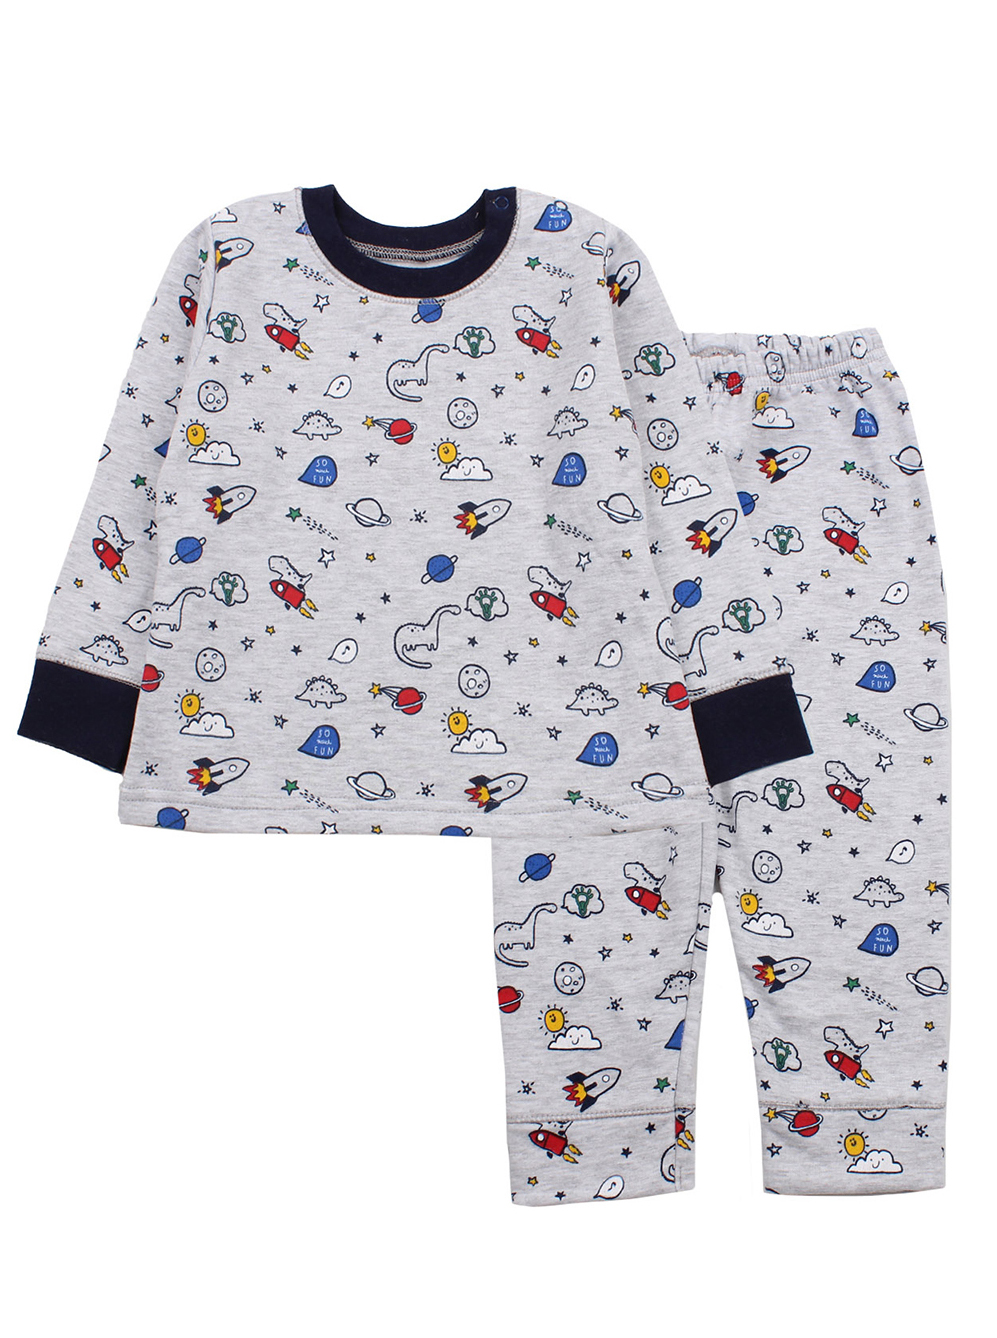 Утепленнная піжама для хлопчика Фламінго Космос сіра 109-307 - ціна